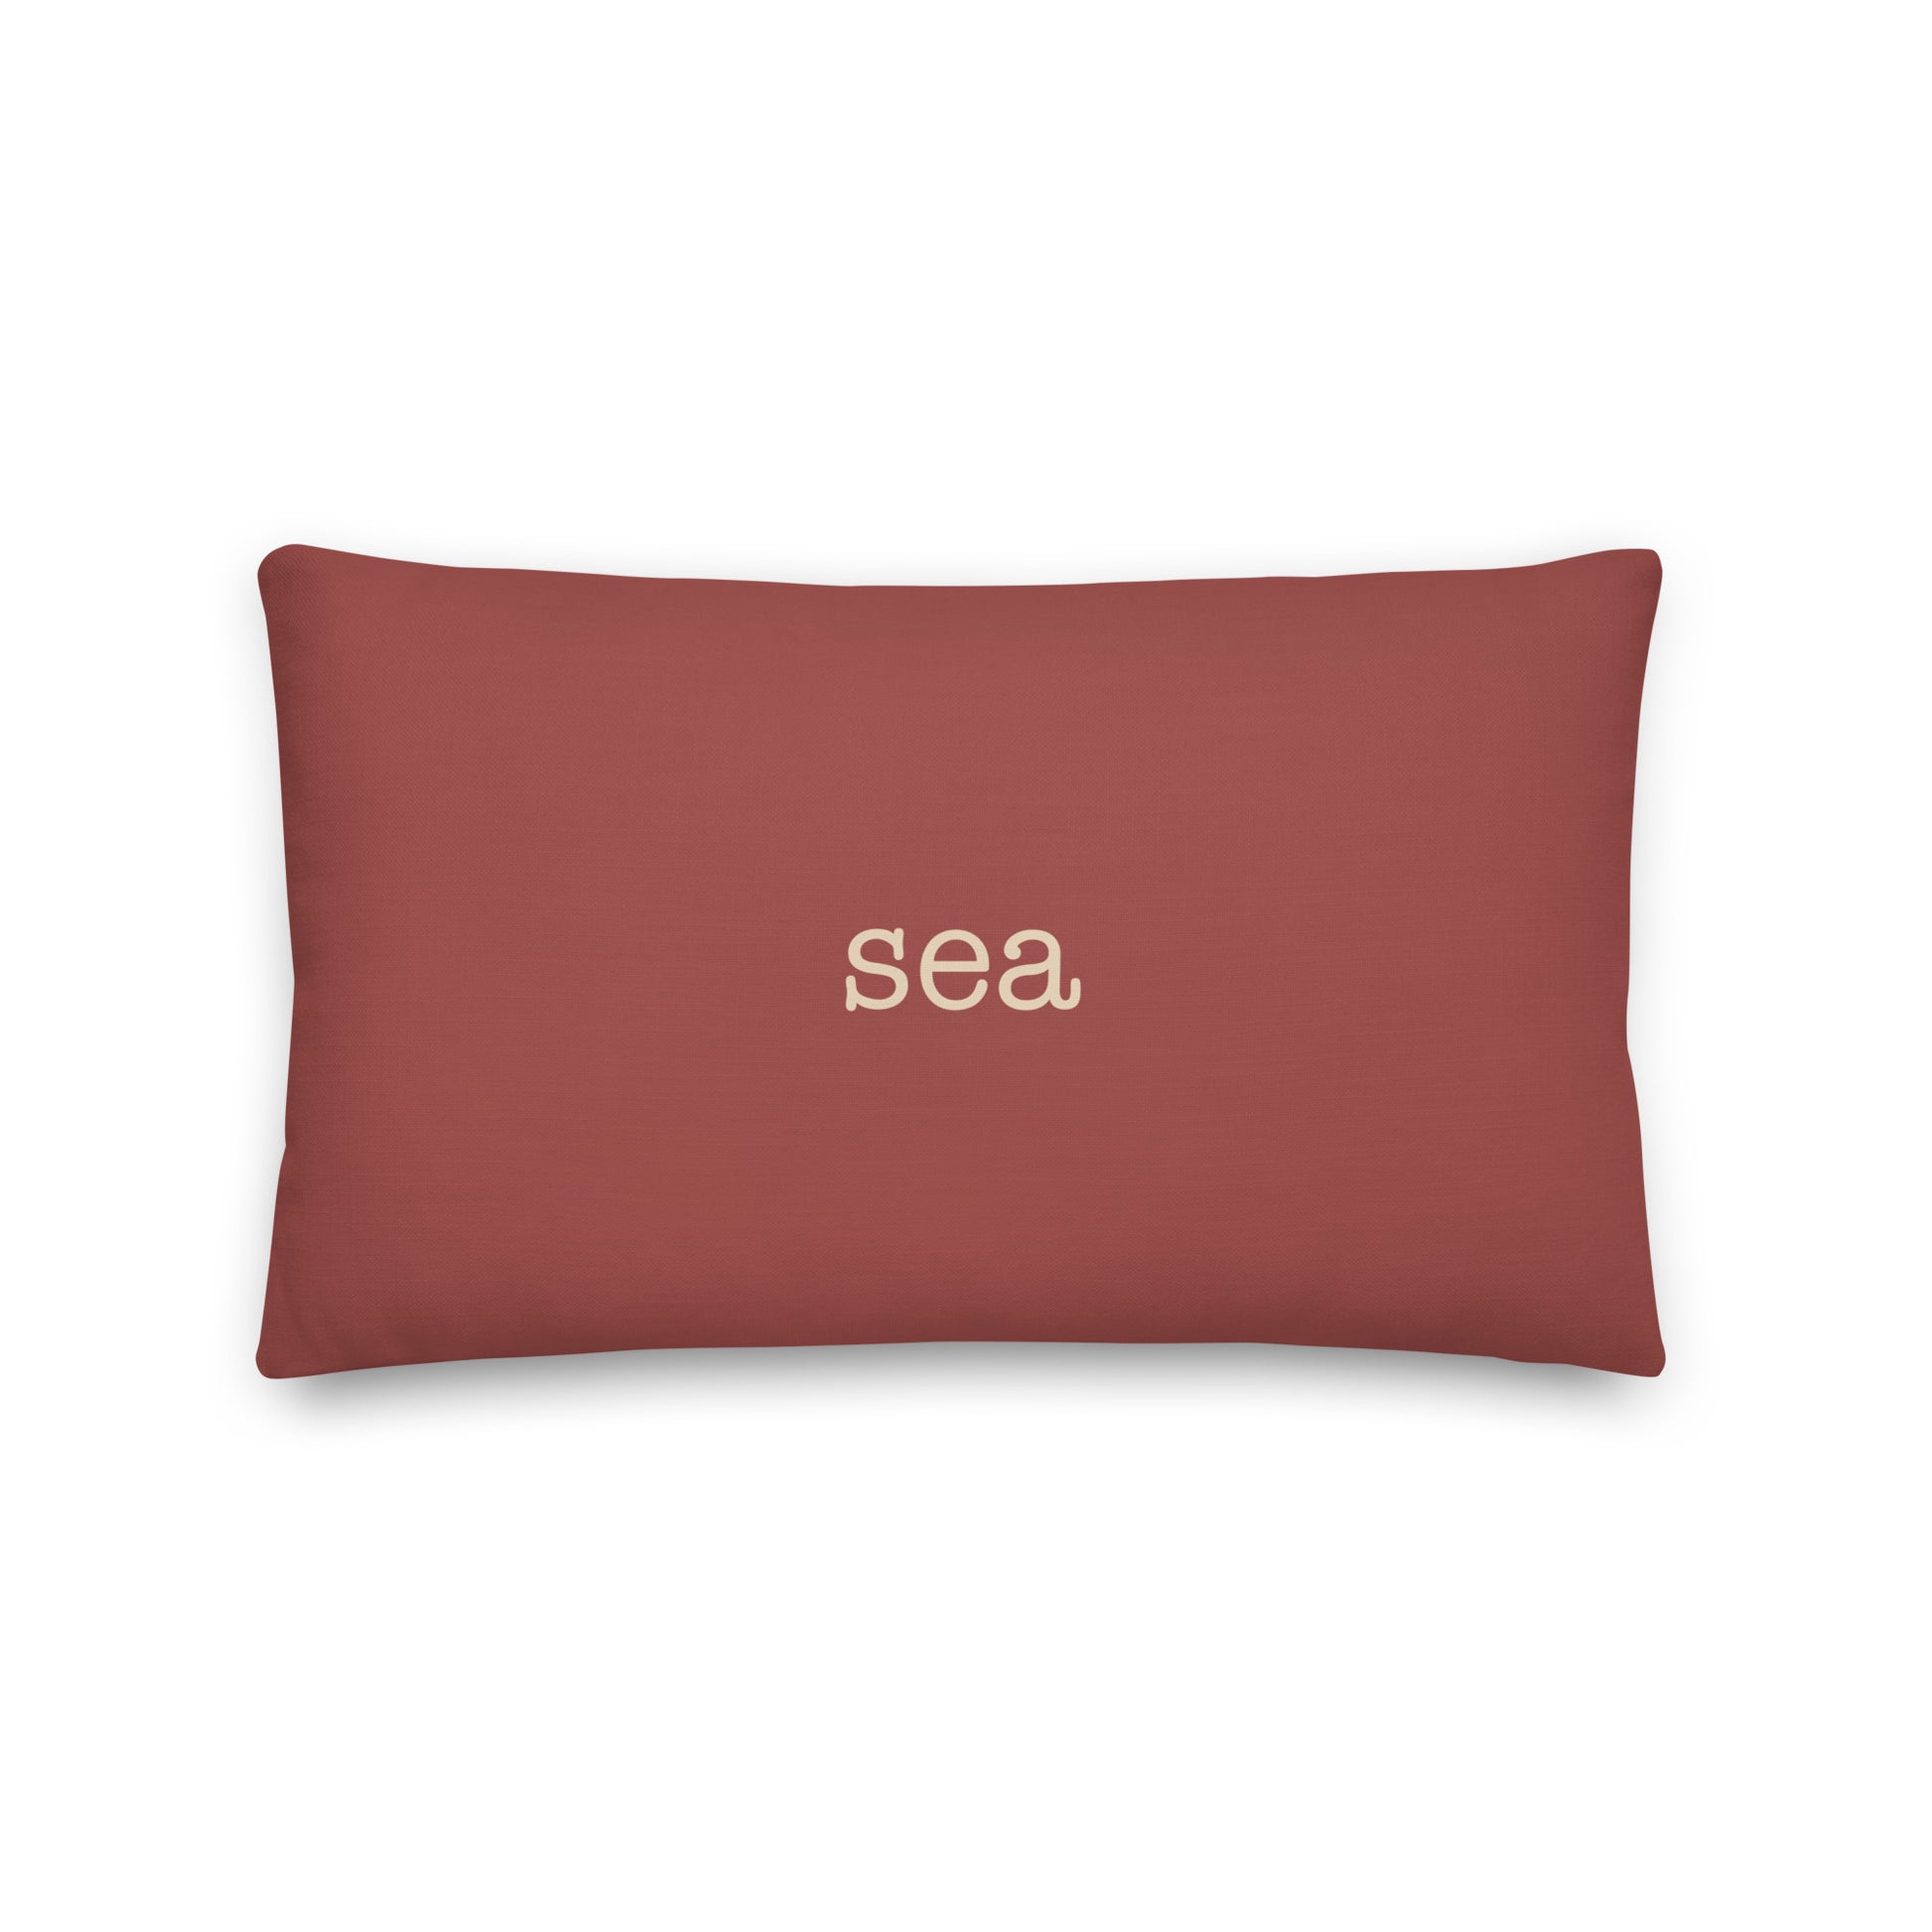 Typewriter Pillow - Terra Cotta • SEA Seattle • YHM Designs - Image 02